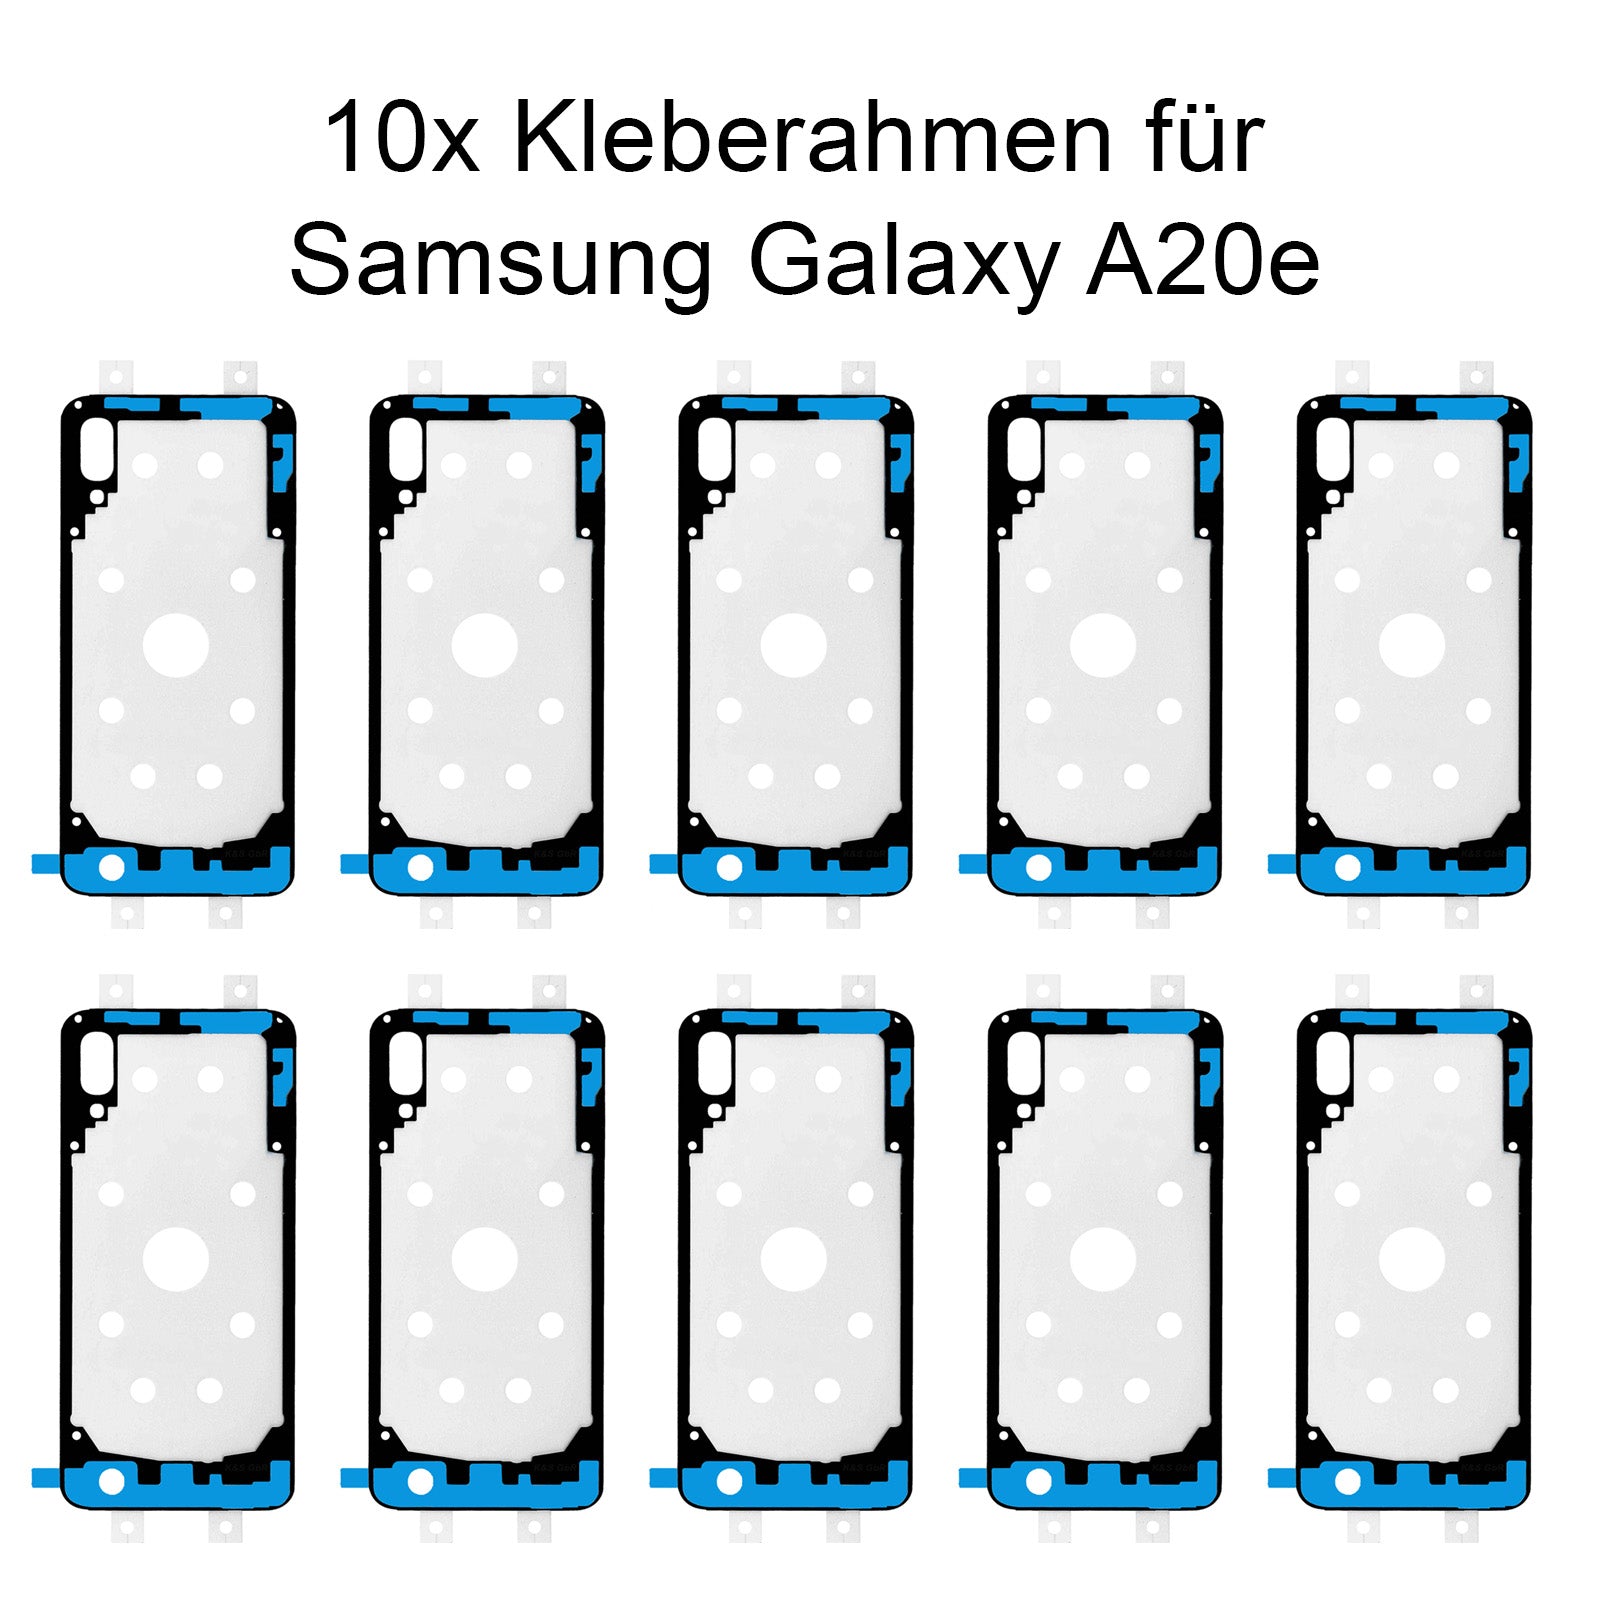 10x Kleberahmen für das Samsung Galaxy A20e, SM-A202. Klebepad, Adhesive Wasser Dichtung, im Dinngs Onlineshop entdecken und bestellen!